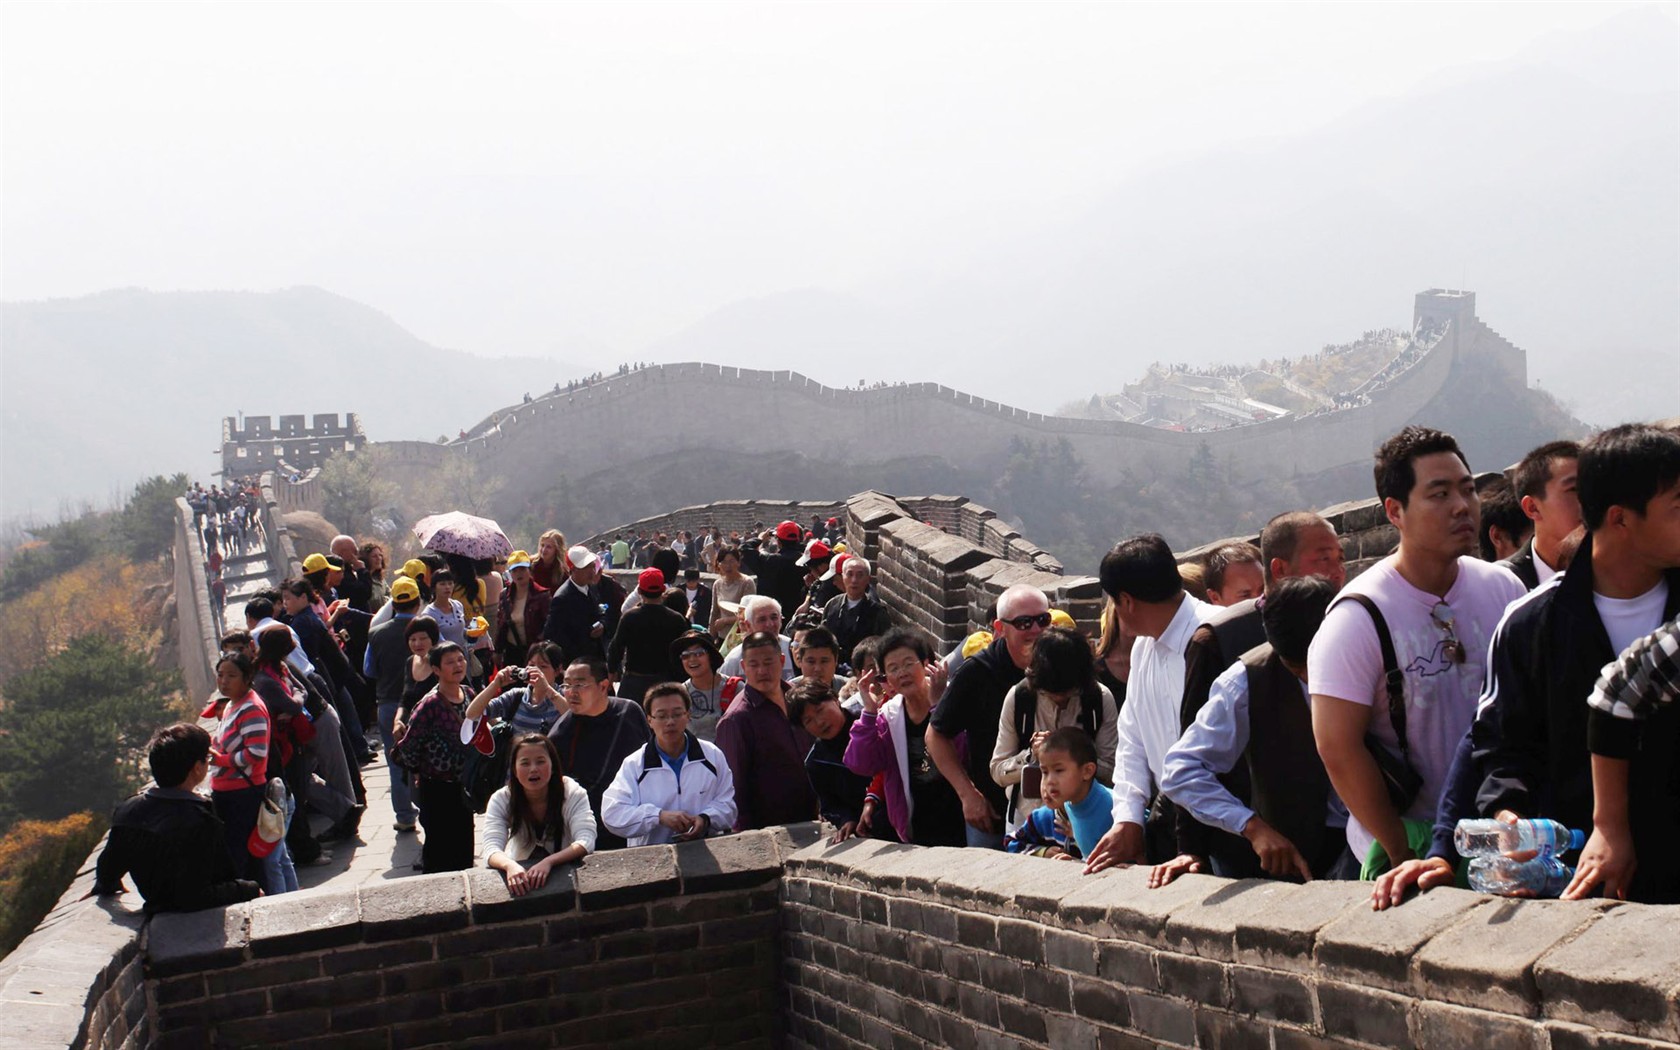 Beijing Tour - Badaling Great Wall (ggc works) #2 - 1680x1050